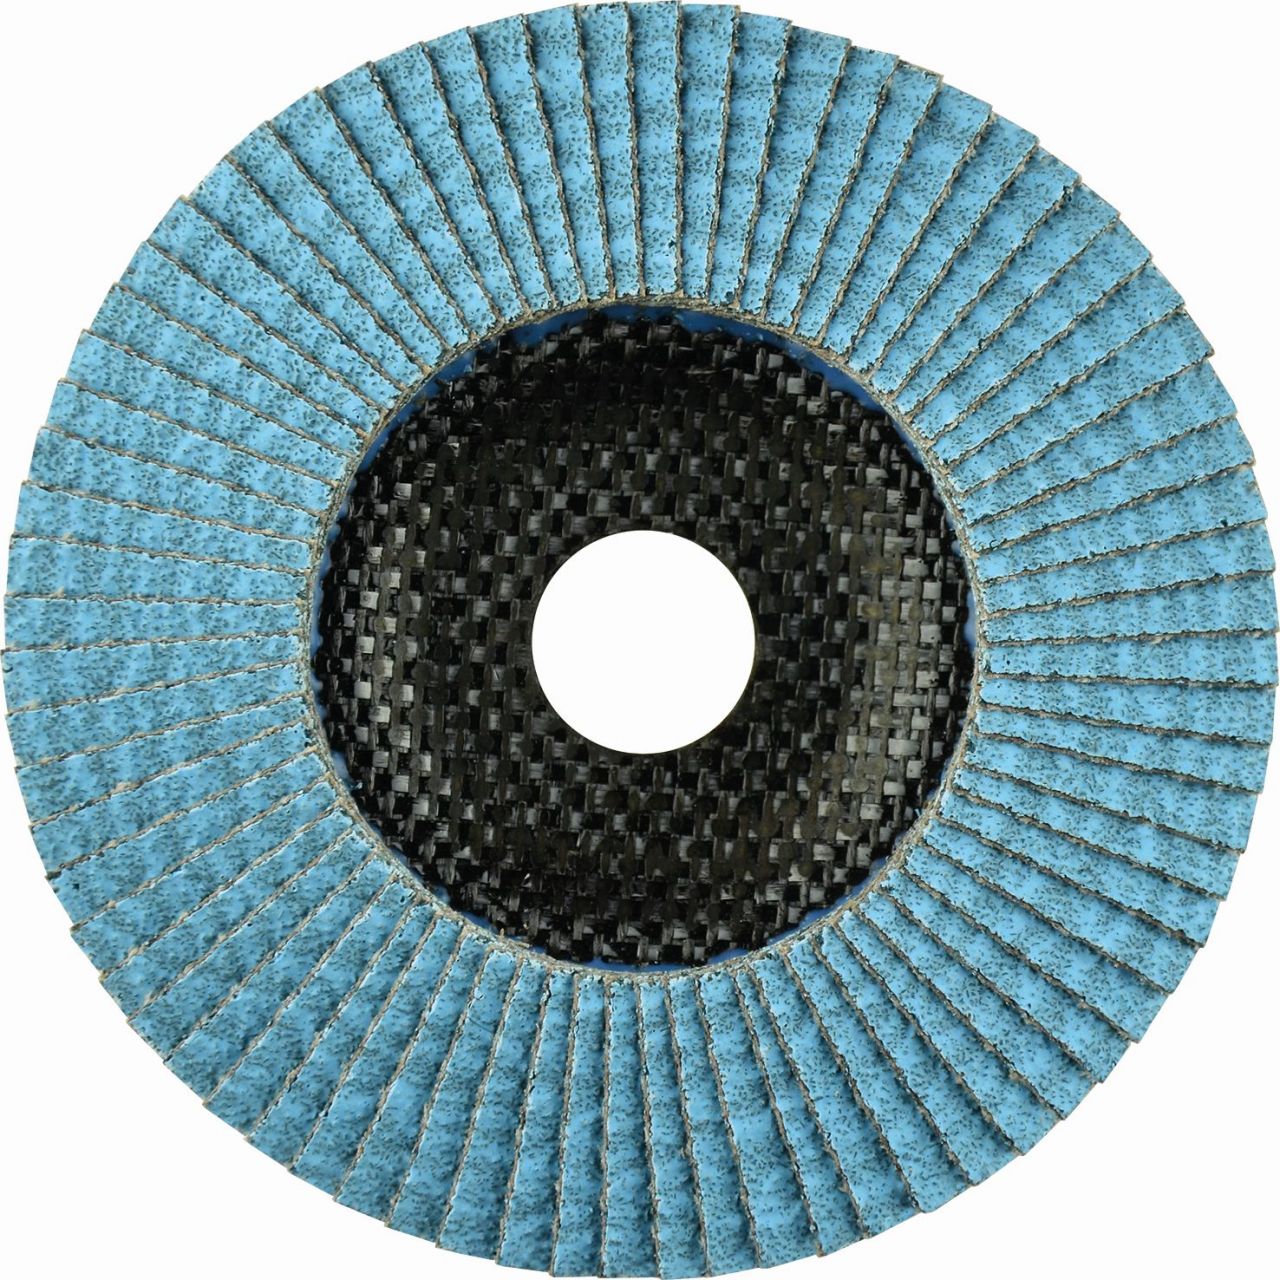 Disco de láminas abrasivo Zirconio ZIRCON MAXX de 115 mm grano 40 y base plana